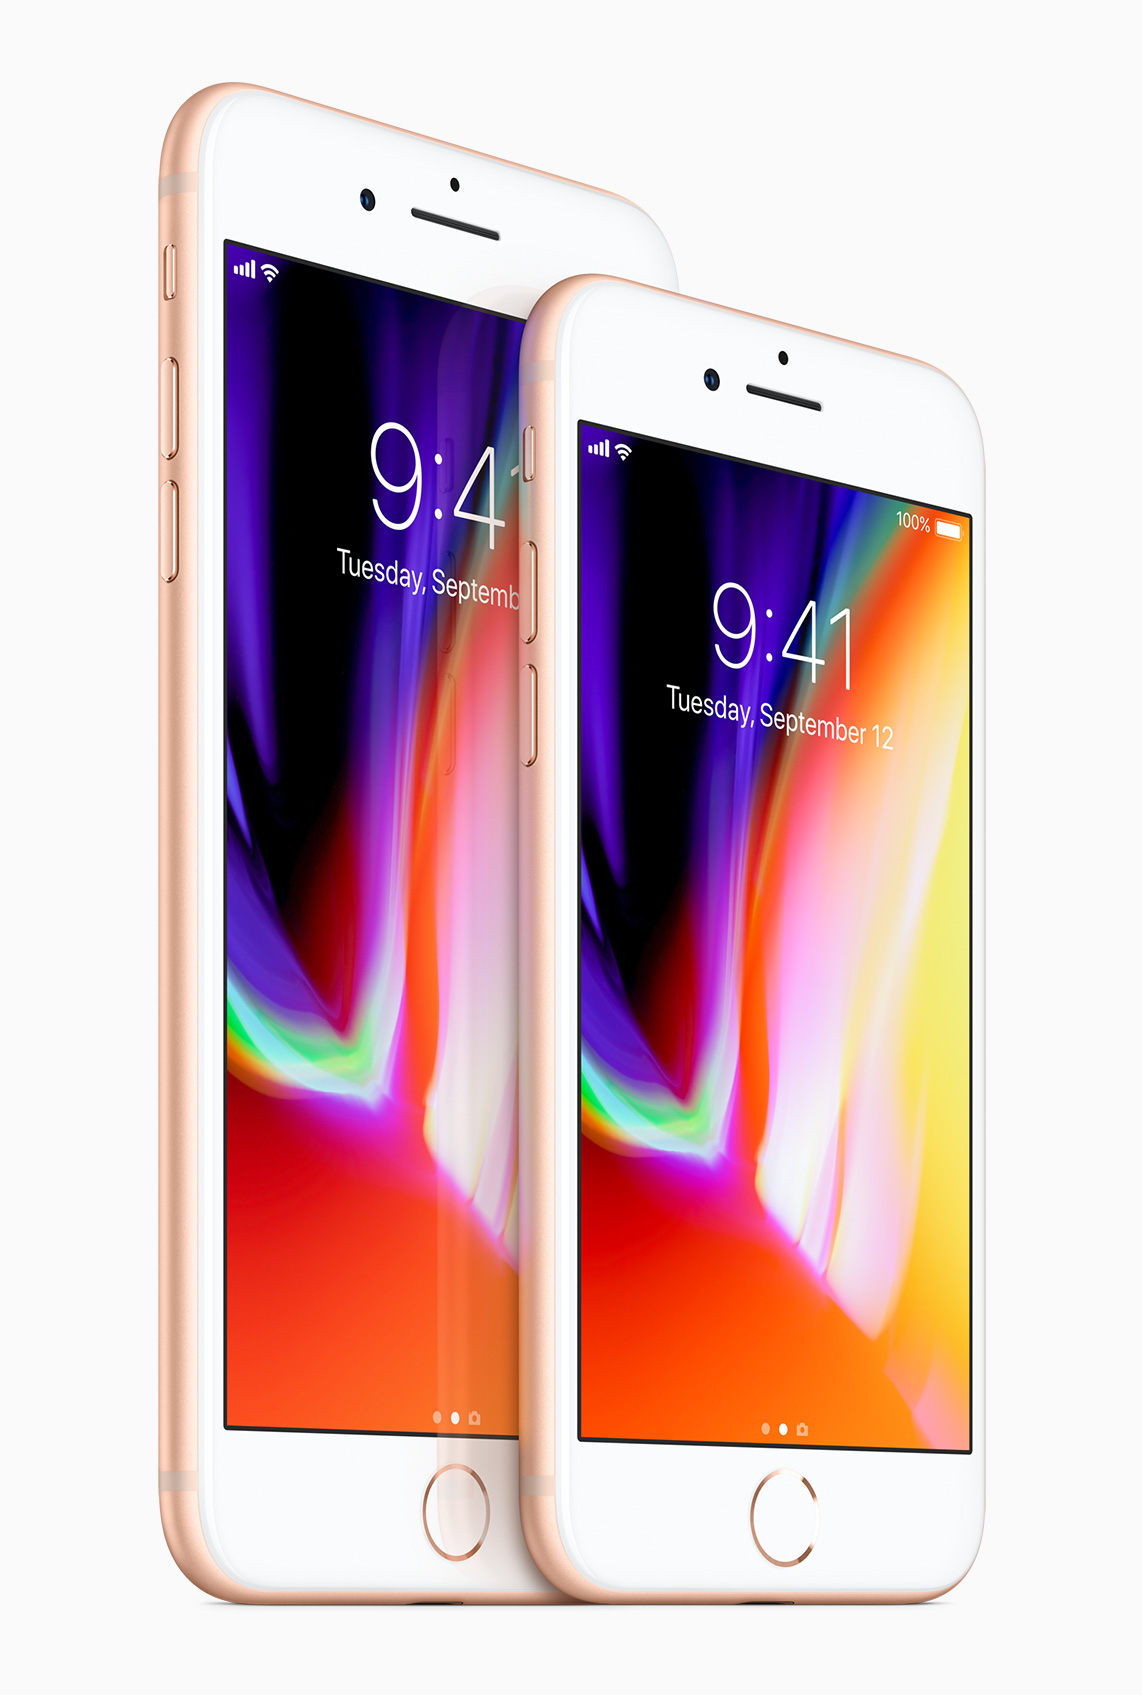 Jetzt bei Drillisch: Das neue iPhone 8 und iPhone 8 Plus mit attraktiven Allnet-Flats und LTE-Highspeed